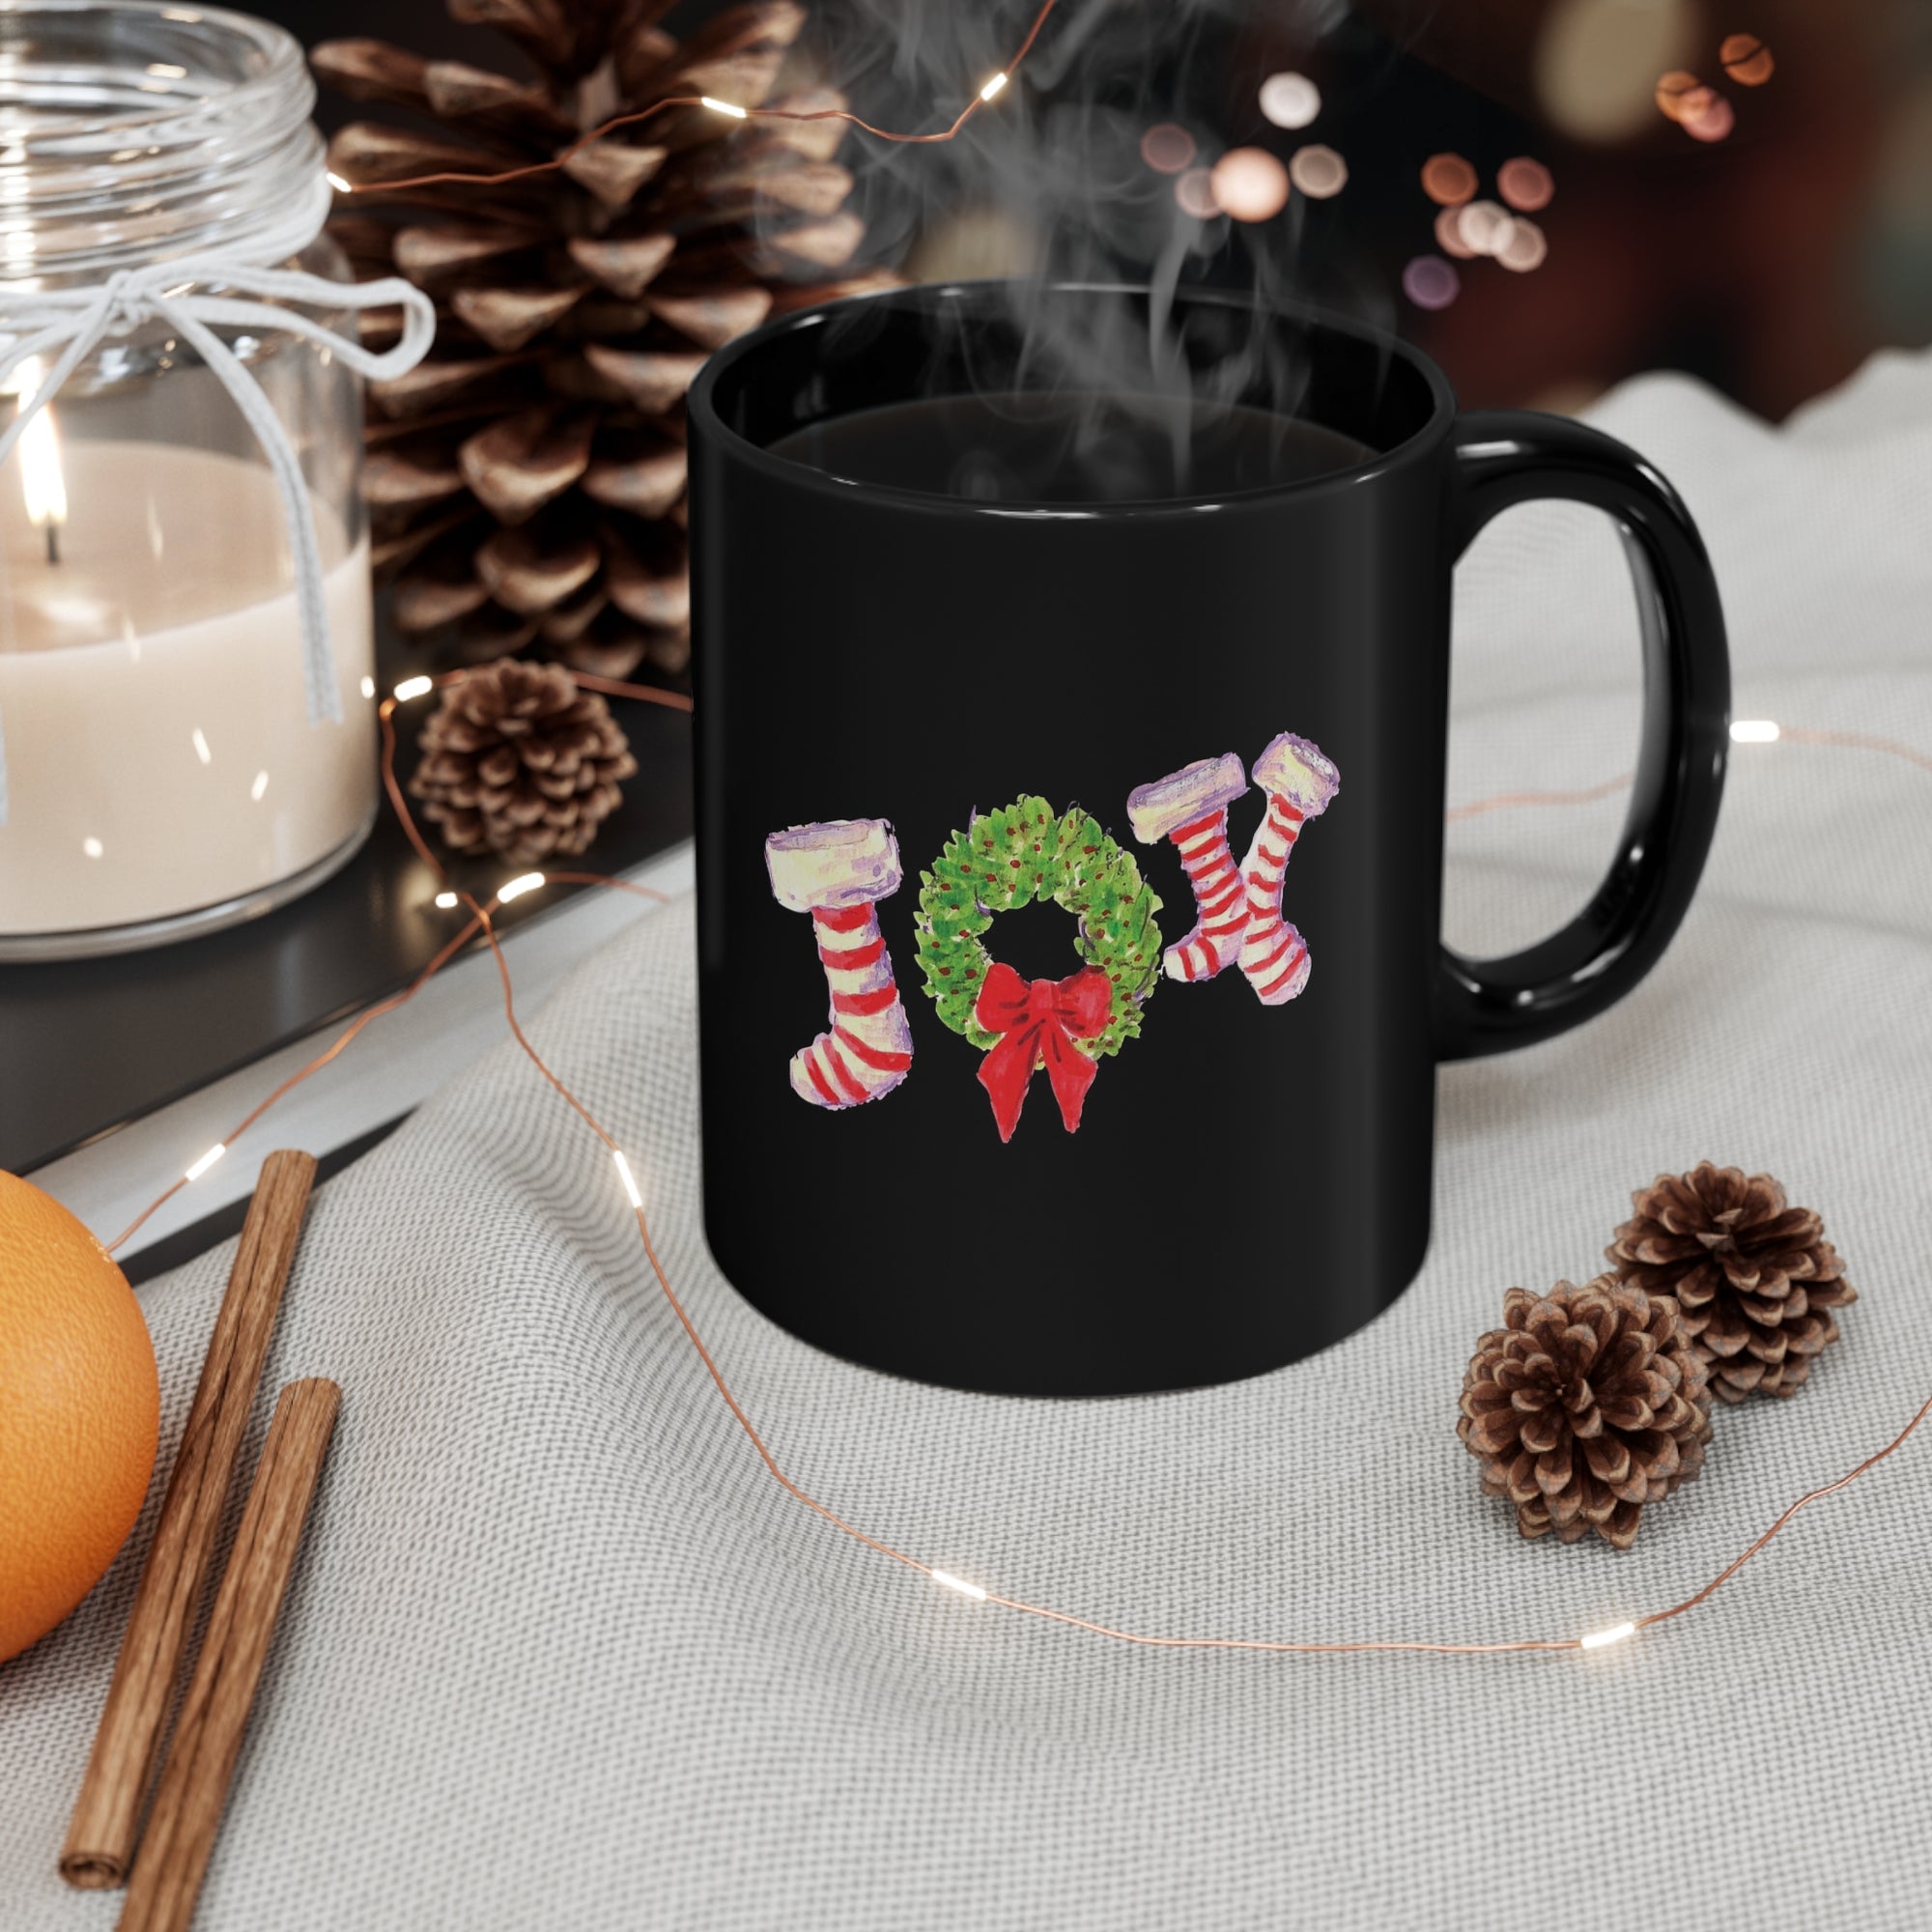 Holiday Festive Joy Stockings Ceramic Mug - Christmas Holiday Mug